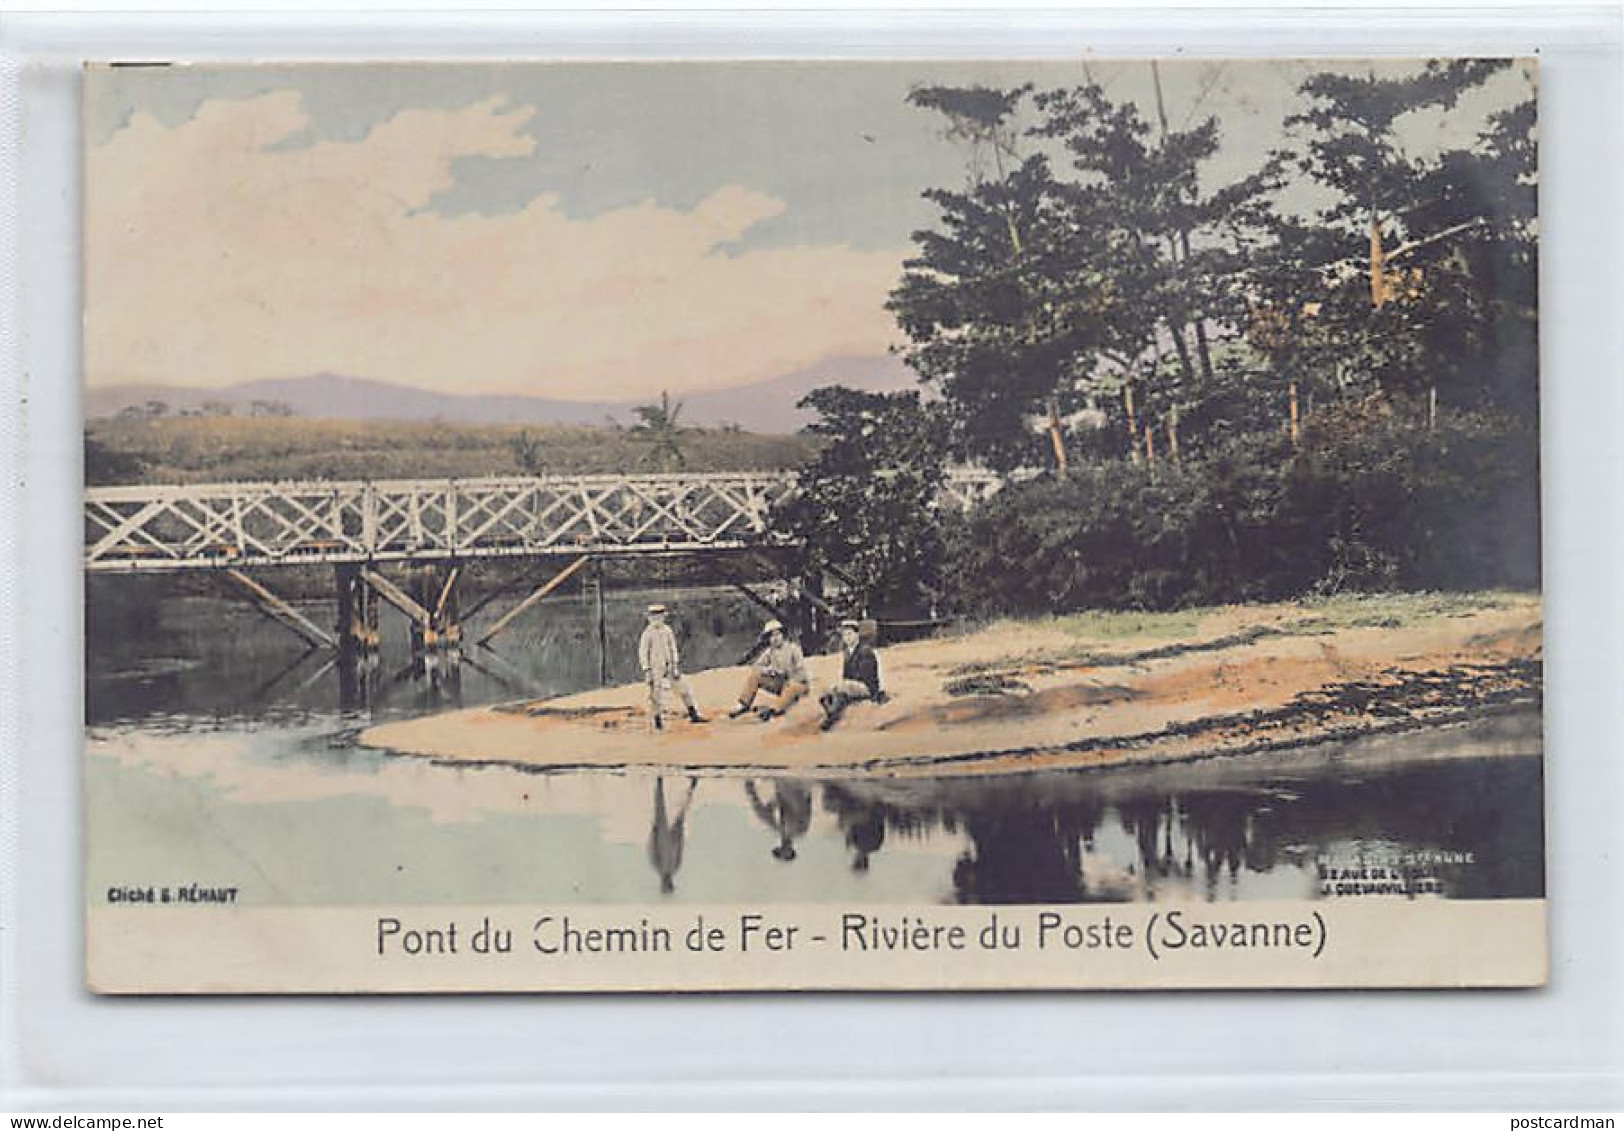 Mauritius - Pont Du Chemin De Fer - Rivière Du Poste (Savanne) - Publ. Cliché G. Réhaut - Magasins Sainte-Anne  - Maurice